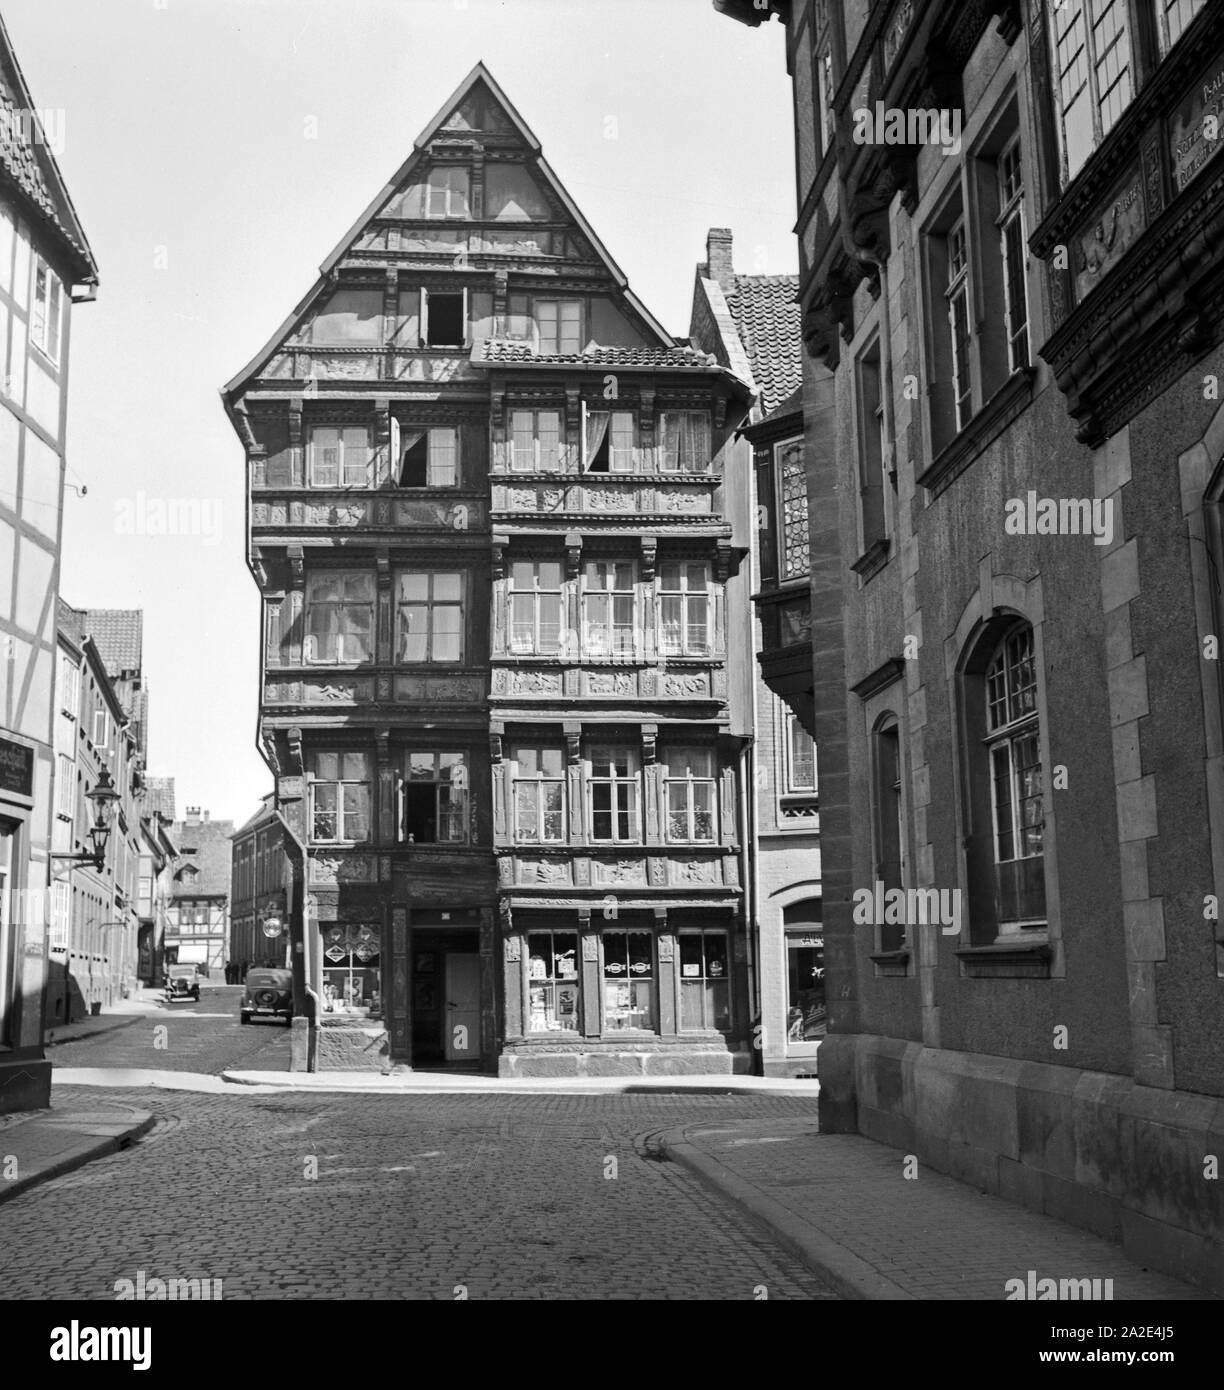 Ein altes Haus in der Altstadt von Hildesheim, Deutschland 1930er Jahre. Una vecchia casa nella vecchia città di Hildesheim, Germania 1930s. Foto Stock